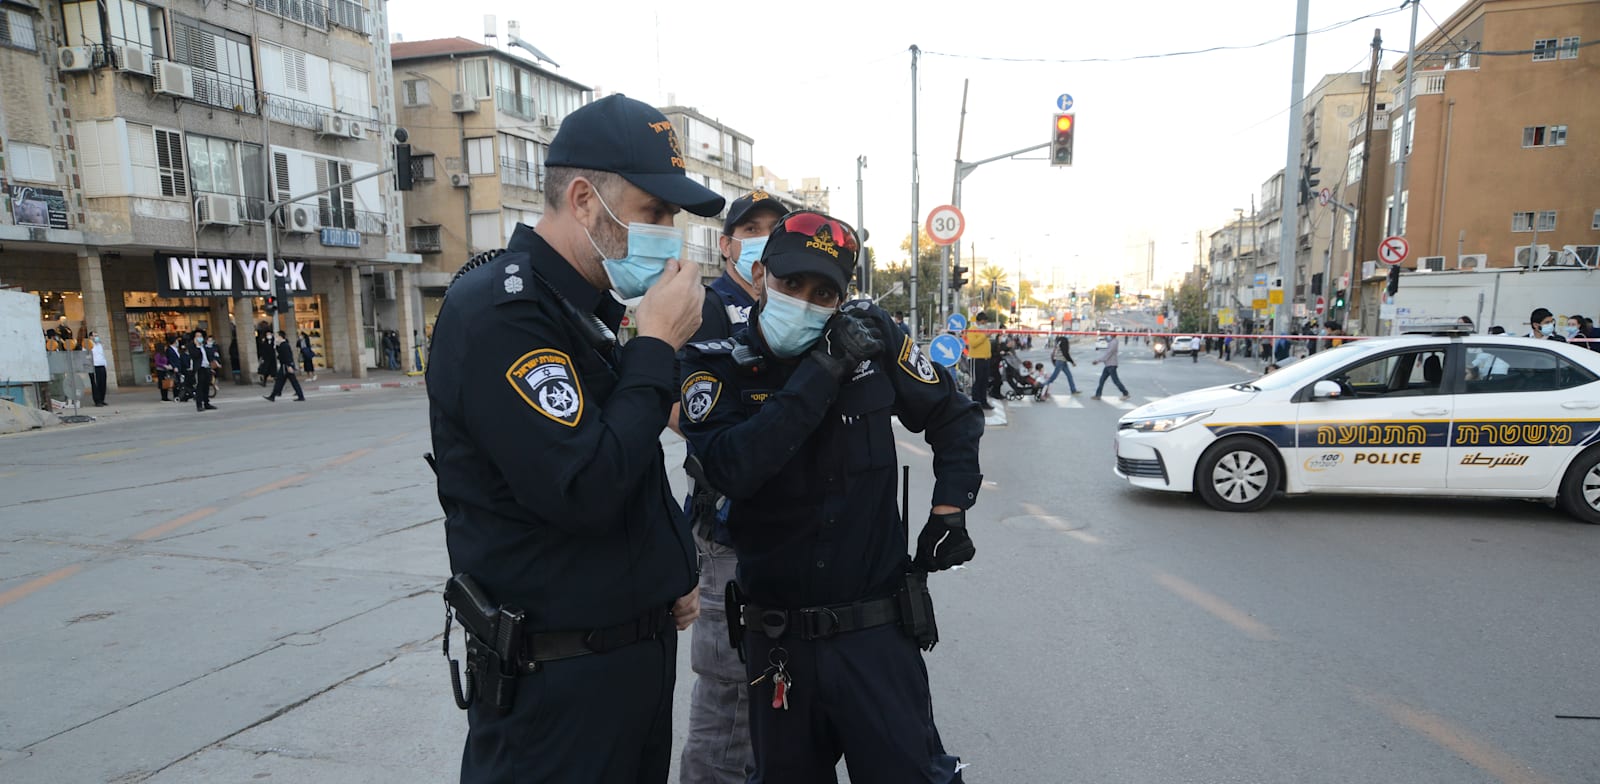 שוטרים בזמן הפגנה בבני ברק / צילום: איל יצהר